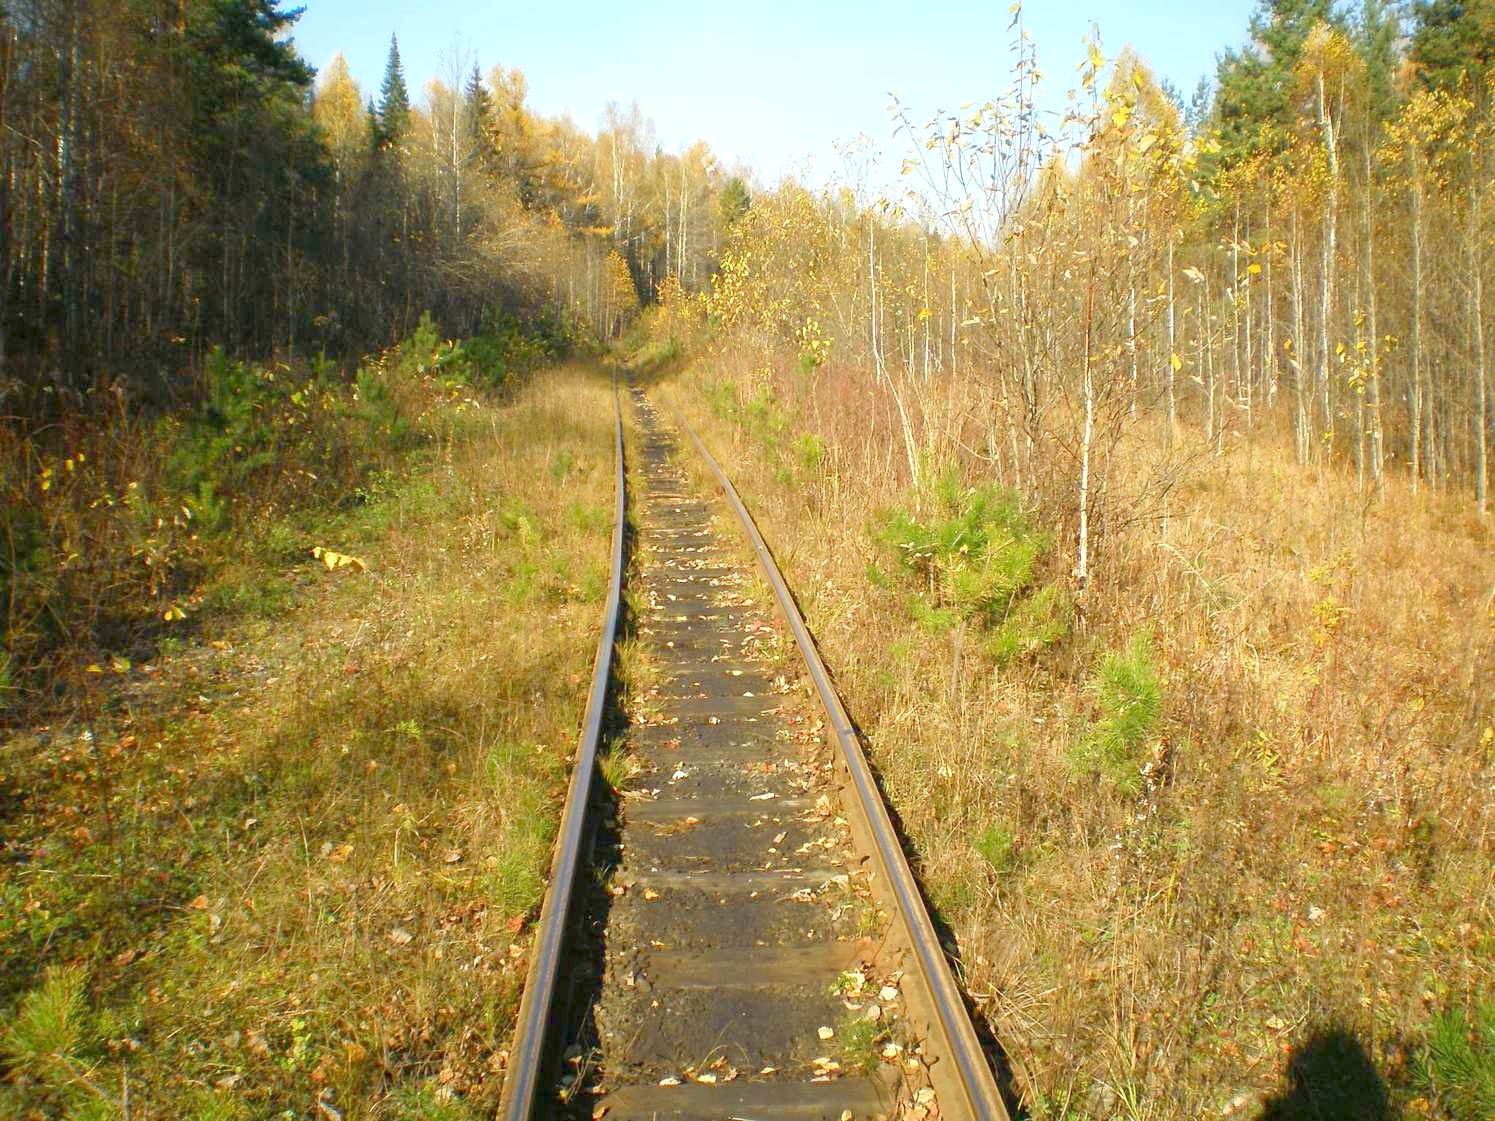 Висимо-Уткинская узкоколейная железная дорога  — фотографии, сделанные в 2007 году (часть 25)